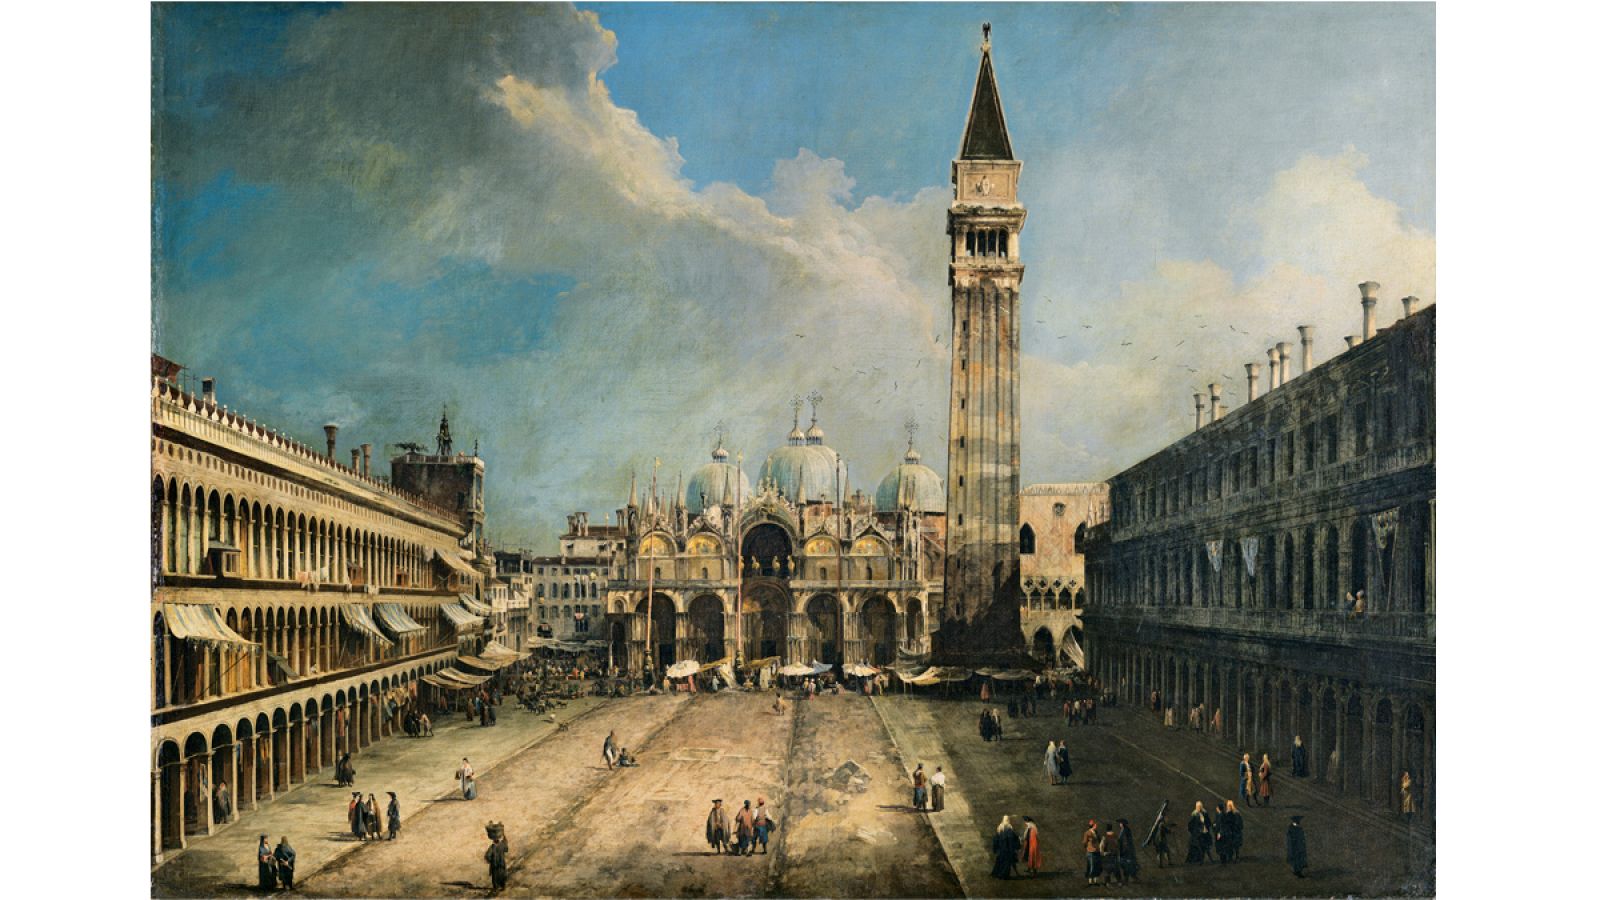 "La Plaza de San Marcos en Venecia". Canaletto. (hacia 1723 - 1724). Museo Nacional Thyssen-Bornemisza, Madrid.